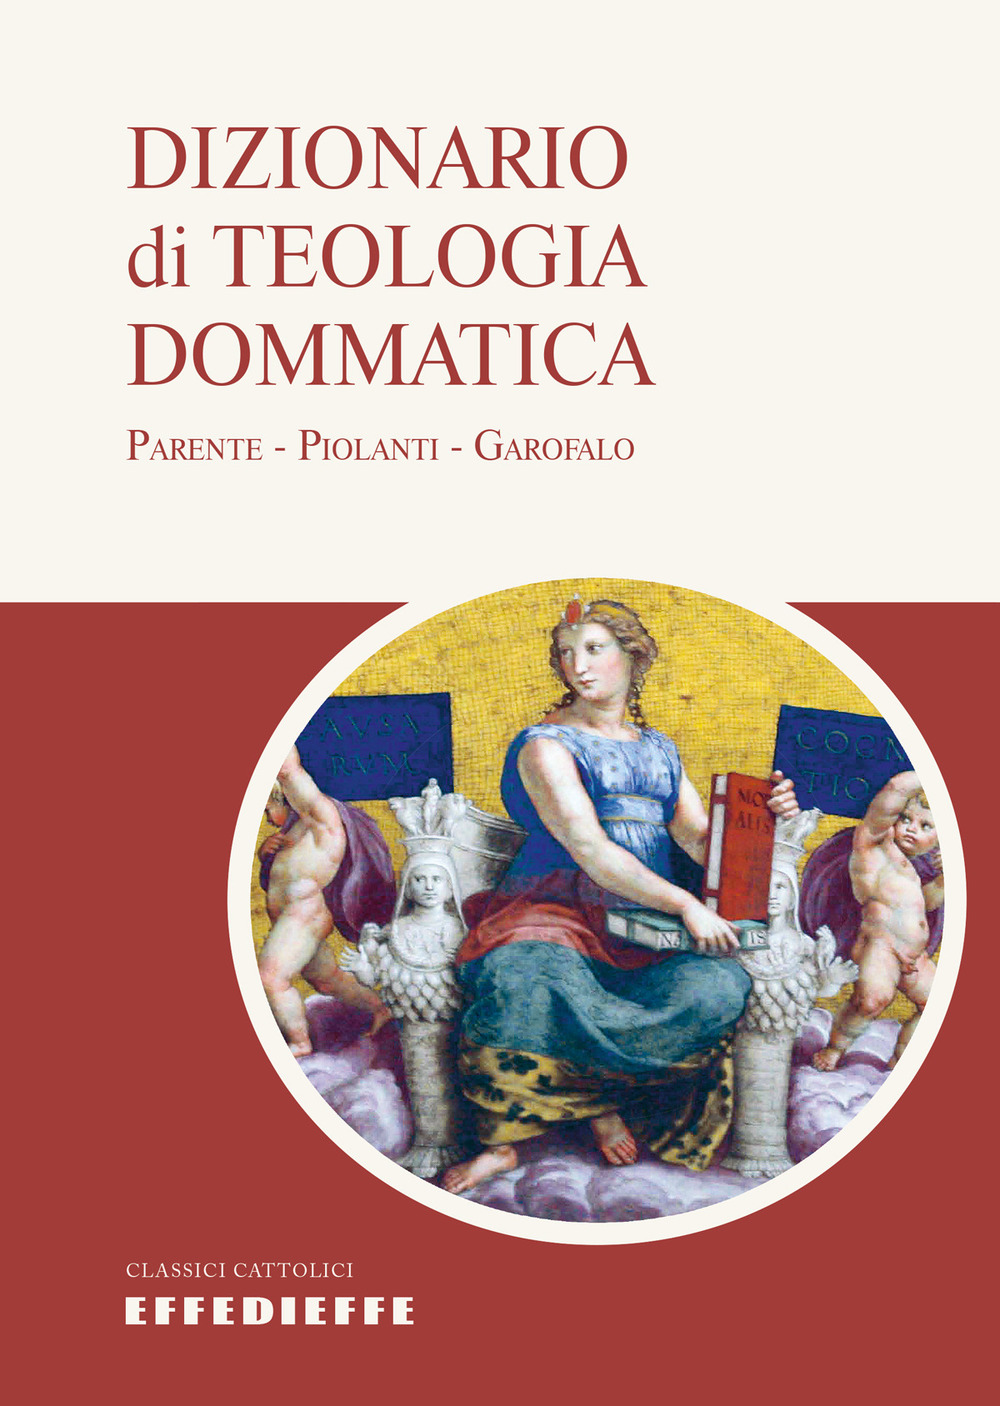 Dizionario di teologia dommatica